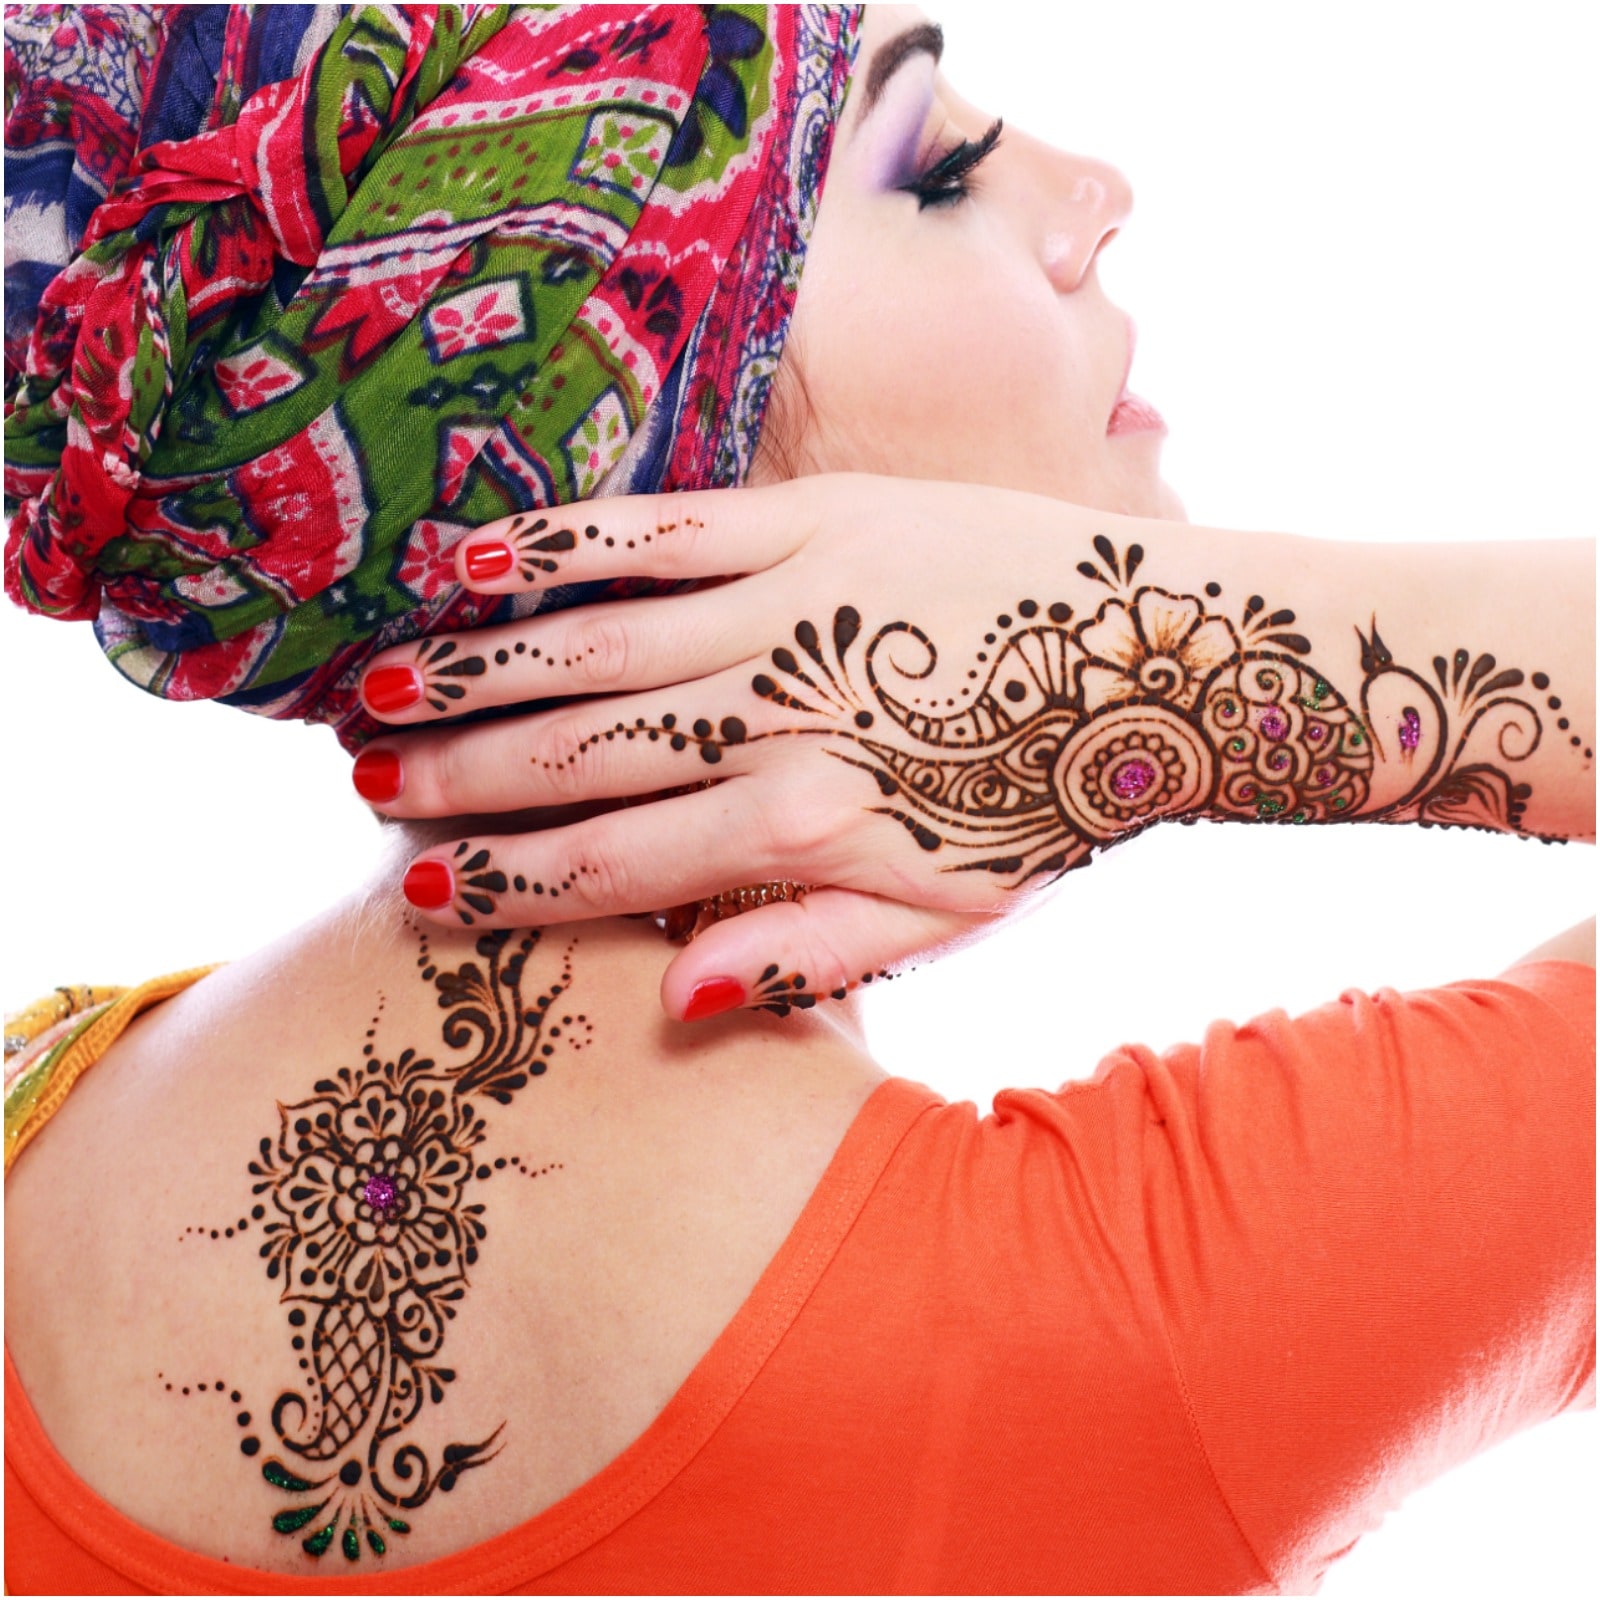 Elegant Henna Designs By @taec_henna #henna #hennafun #hennaart  #hennainspire #hennainspo #hennainspiration #hennainspired #hennadesign ...  | Instagram